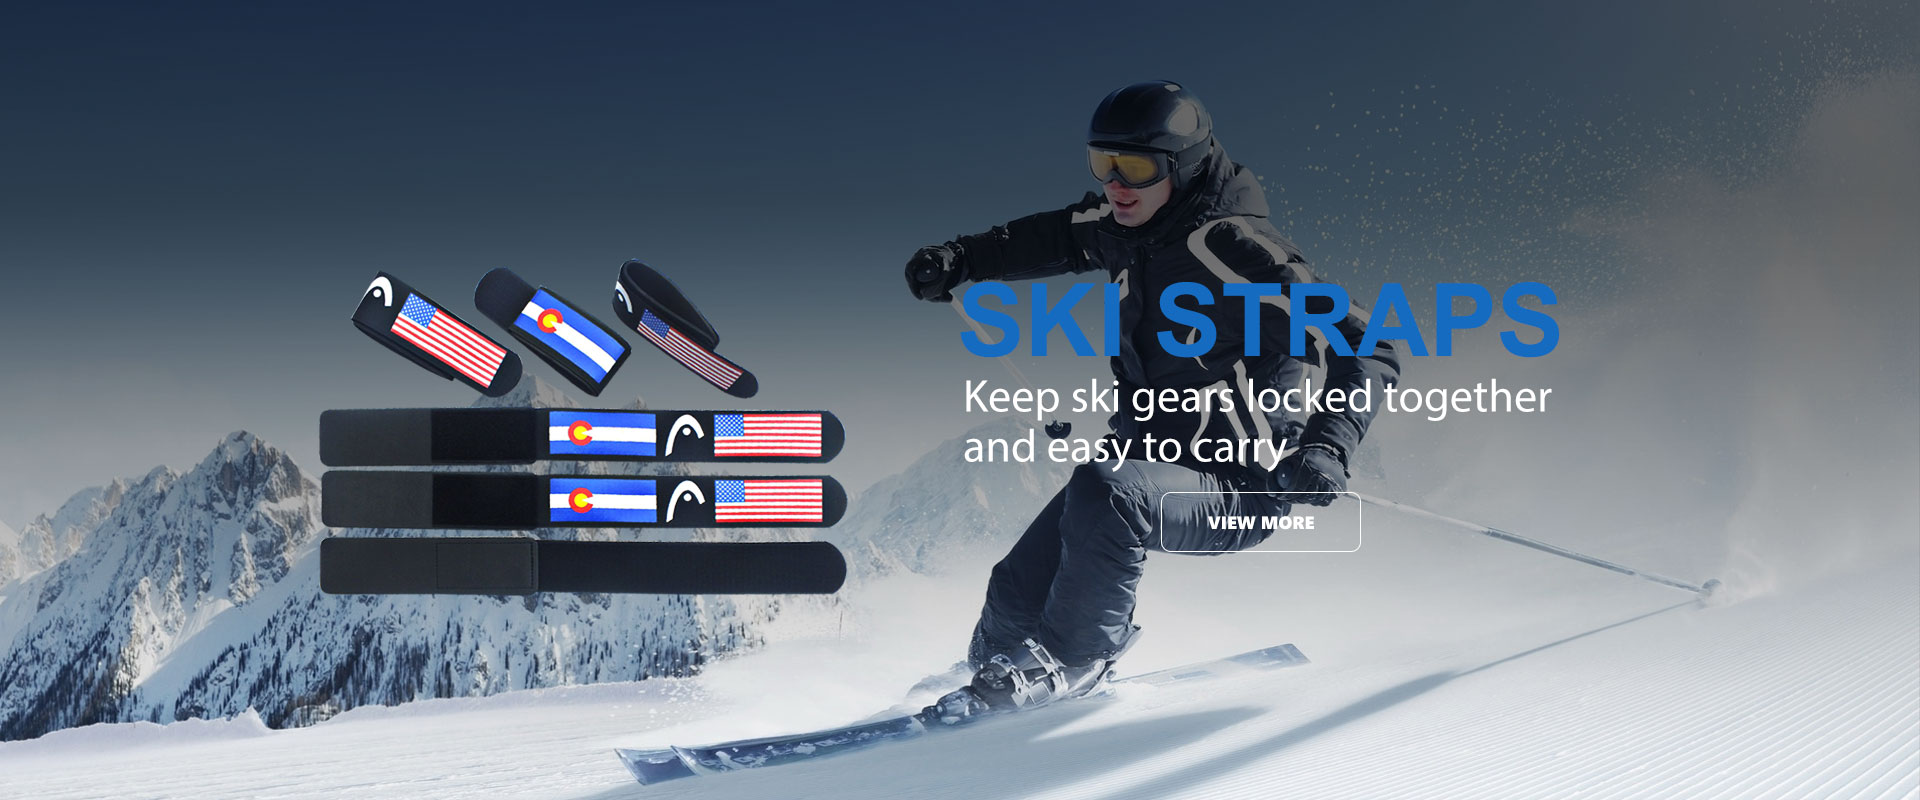 Ski straps